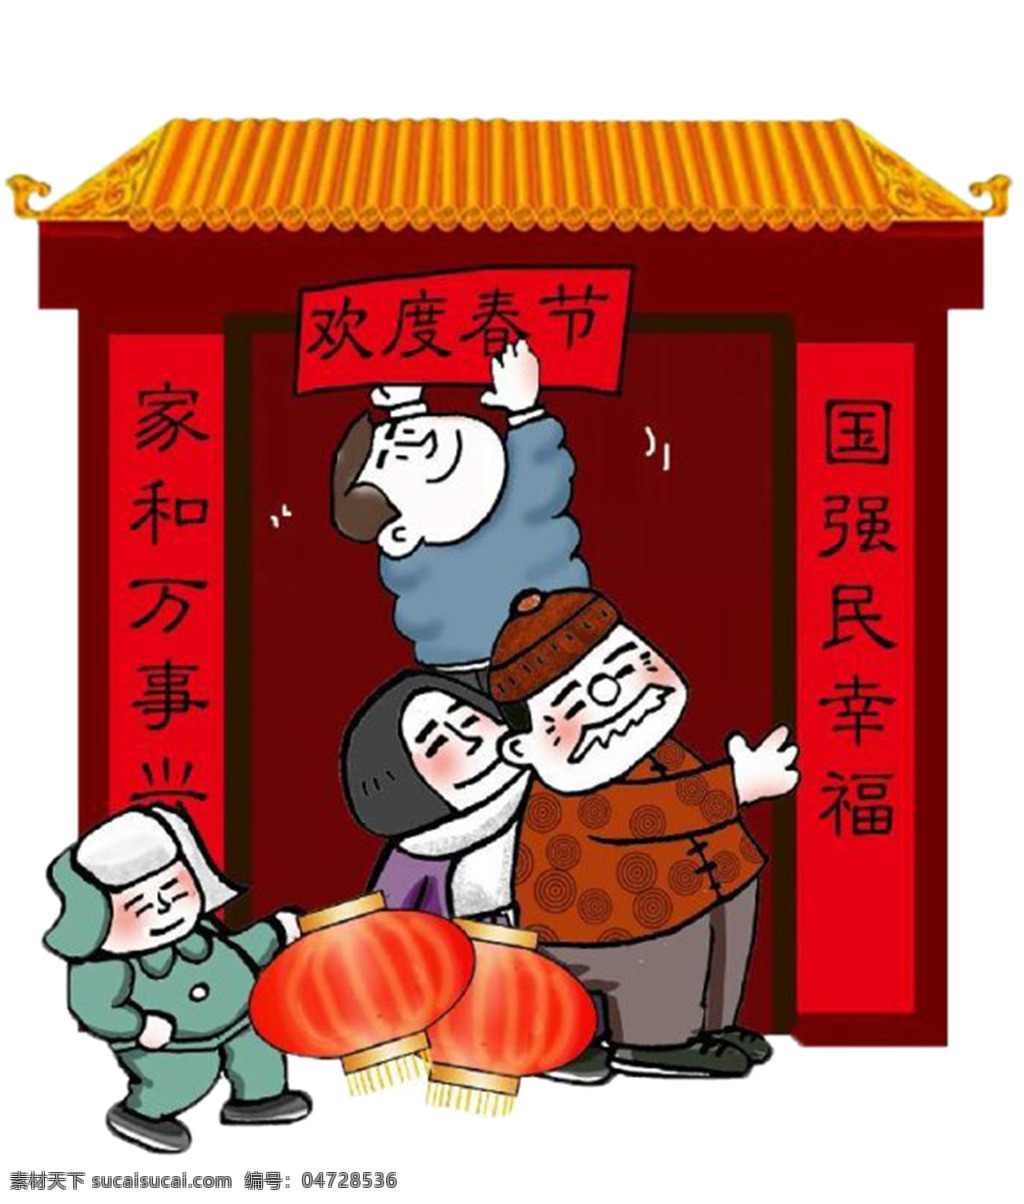 中国 风 新年 贴 对联 元素 除夕 欢度春节 吉祥如意 家和万事兴 节日人物 节日元素 聚餐 卡通人物 卡通新年素材 免抠元素 人物插画 贴对联